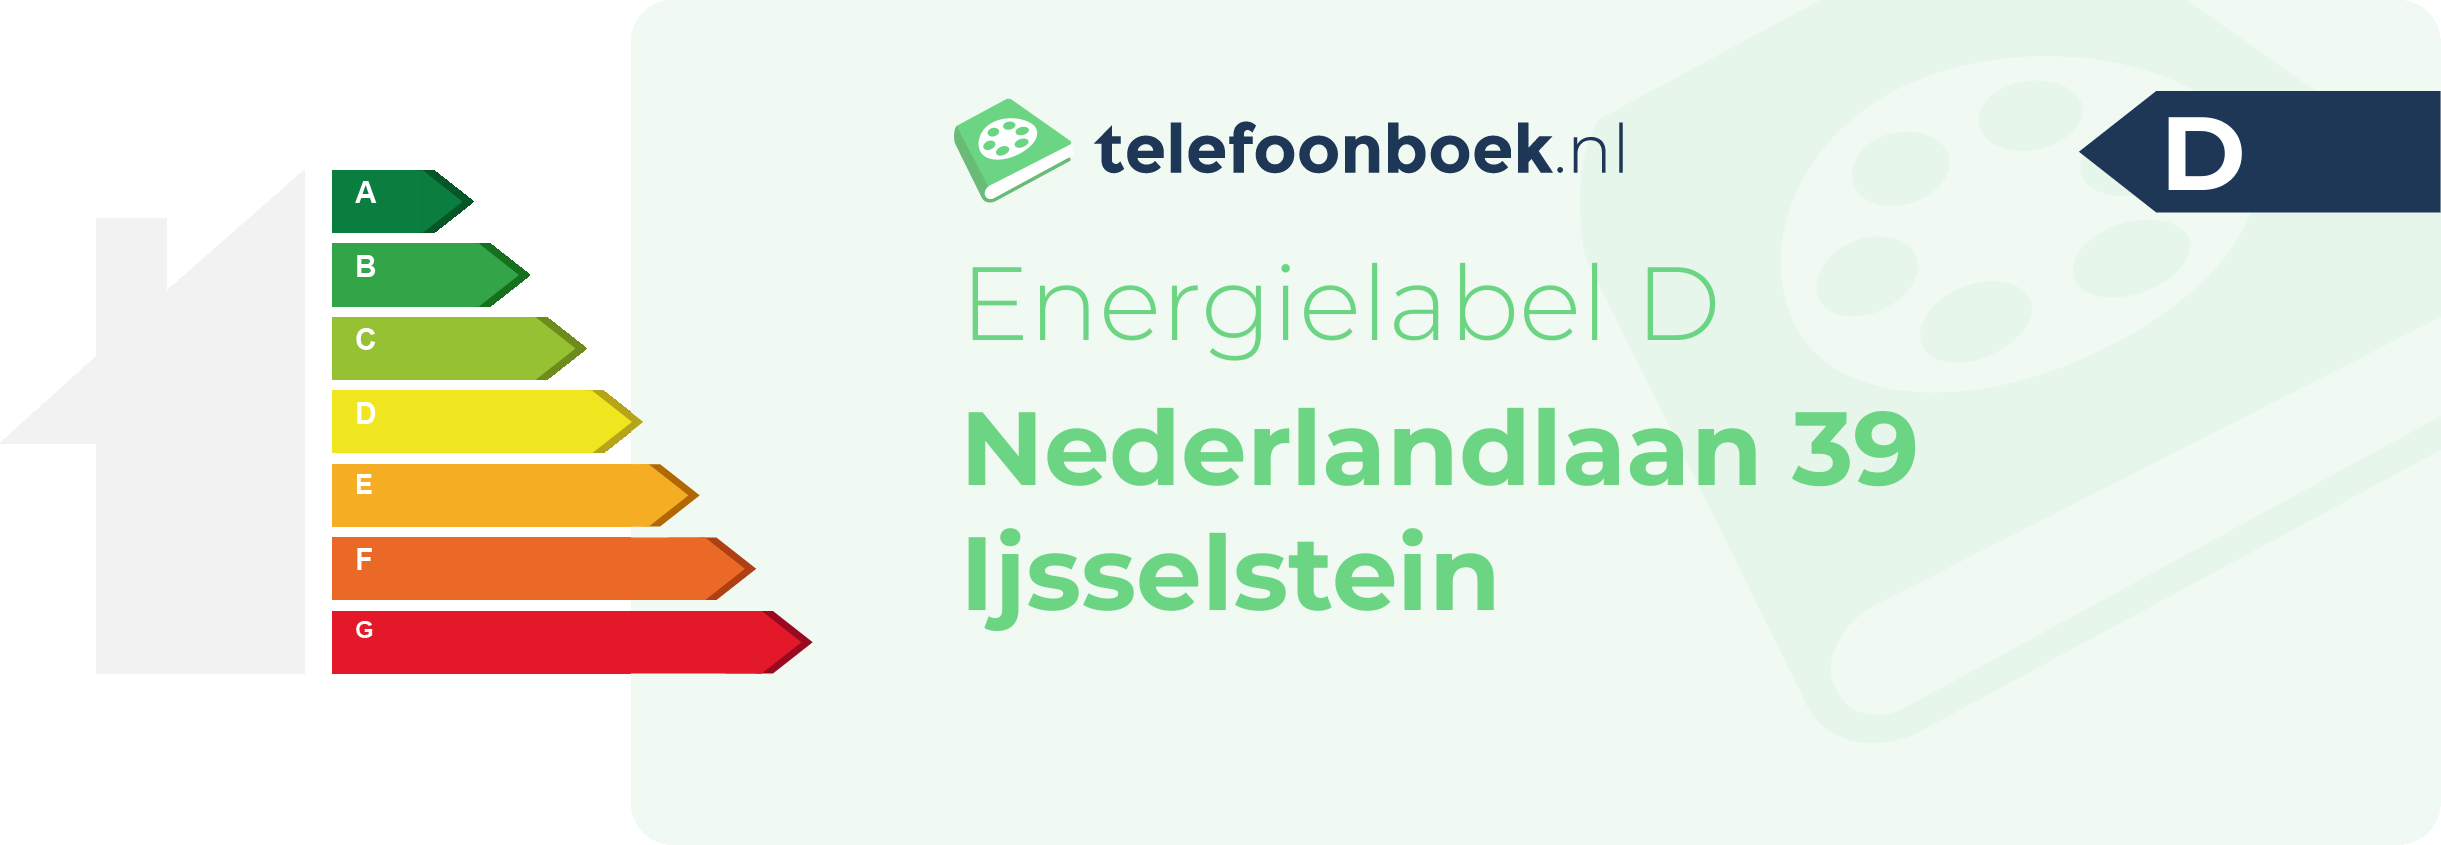 Energielabel Nederlandlaan 39 Ijsselstein